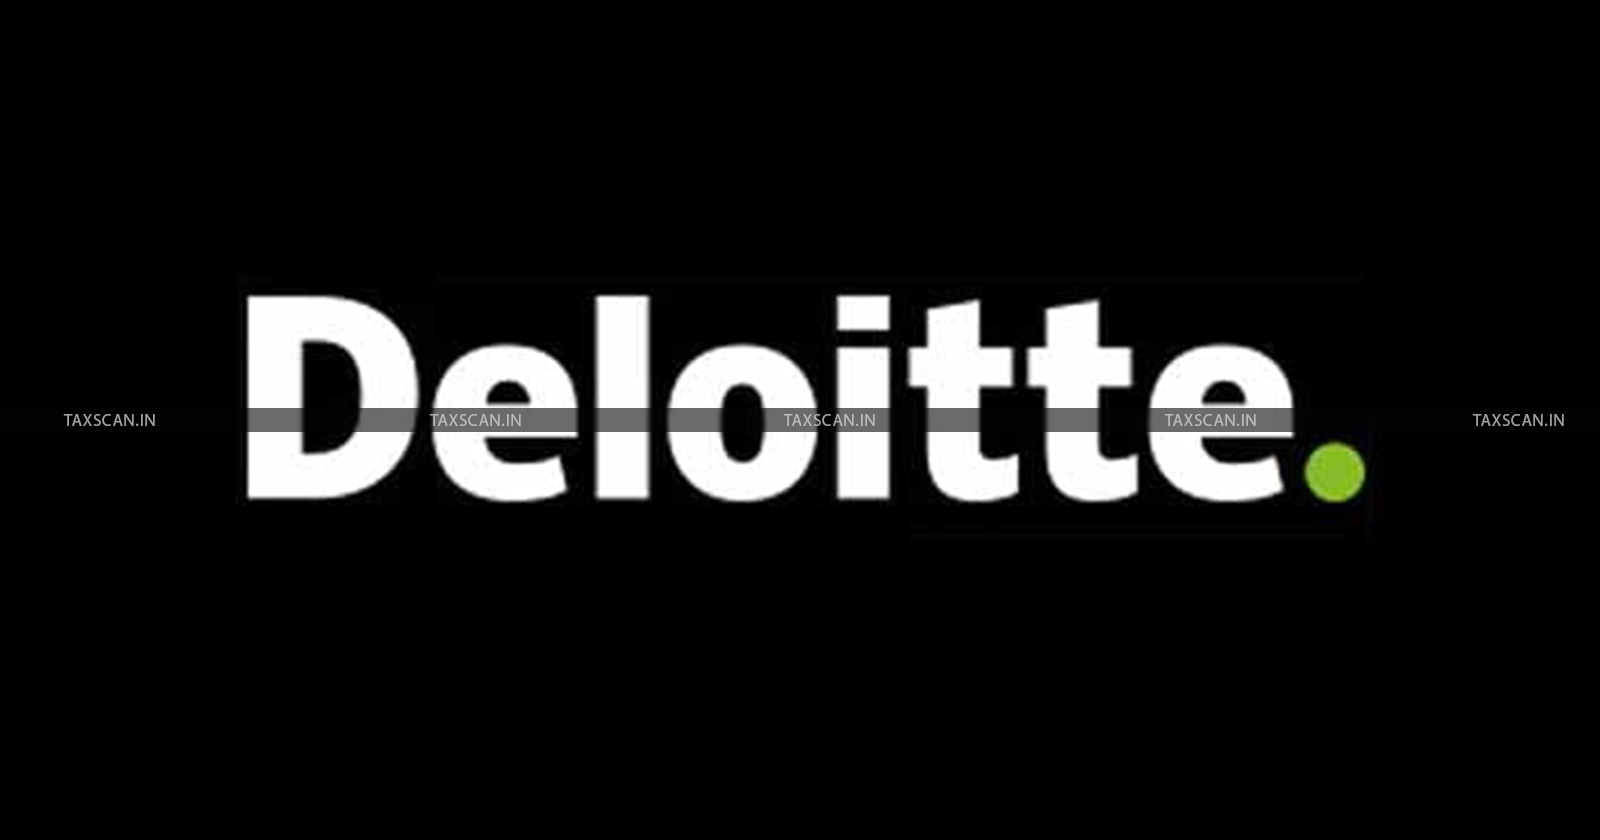 MBA Vacancy in Deloitte - CA Vacancy in Deloitte - Vacancy in Deloitte - TAXSCAN